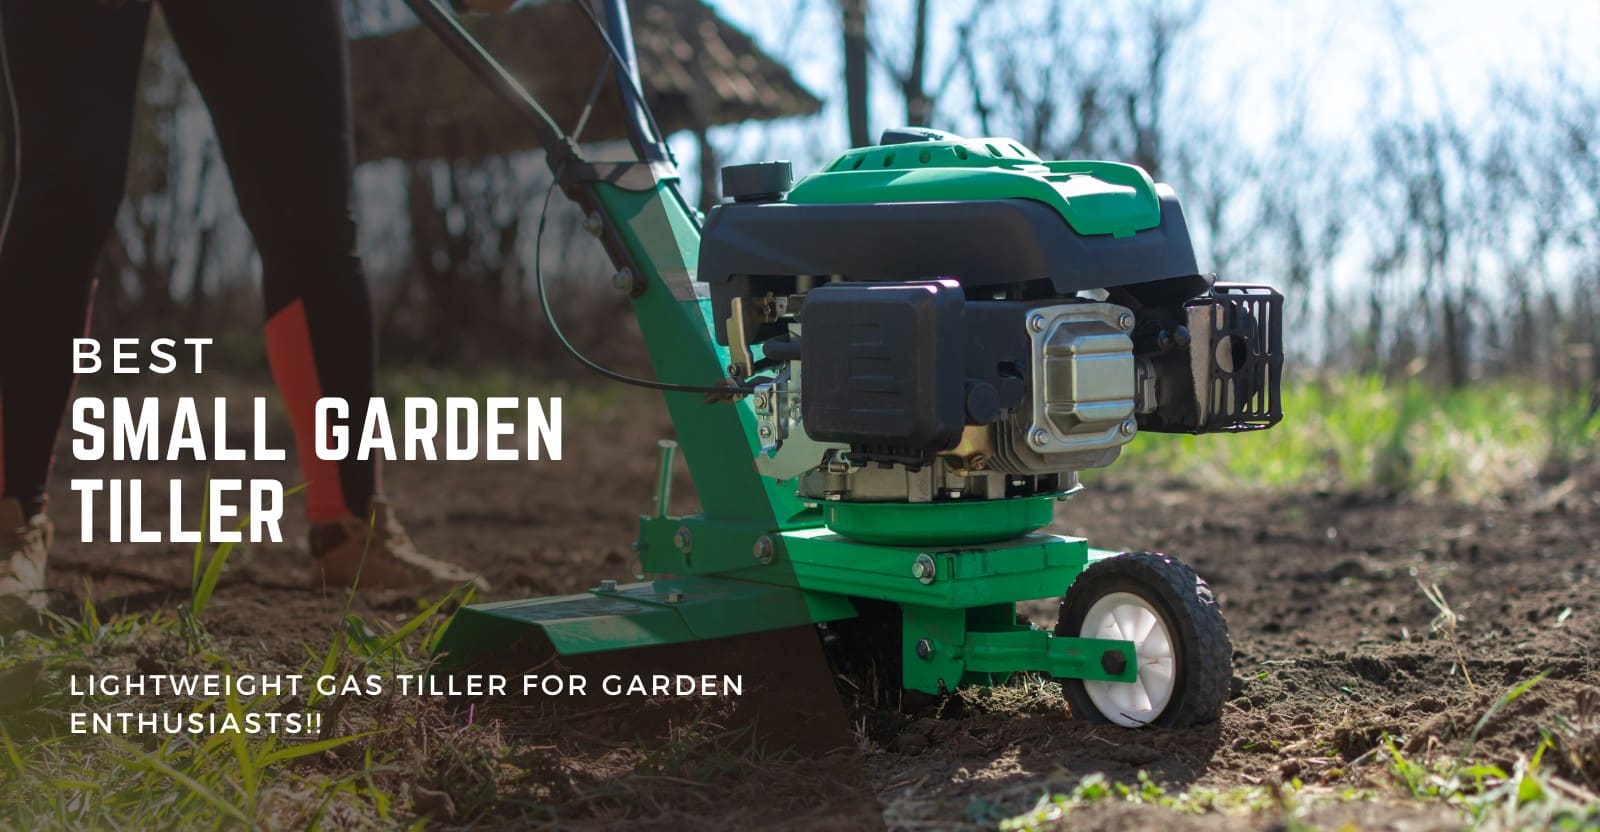 Best Small Garden Tiller Review